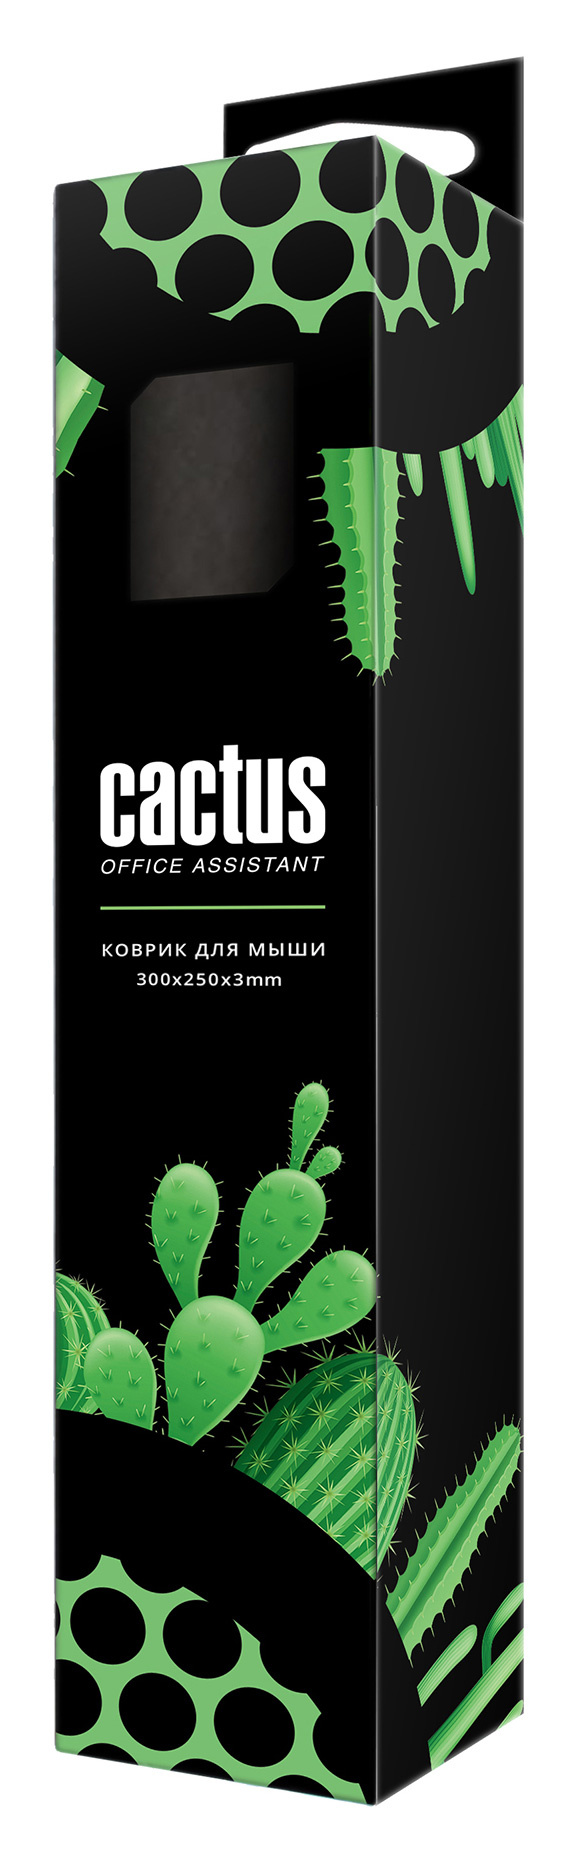 Коврик для мыши Cactus Black Mesh 300x250x3мм (CS-MP-D02M)